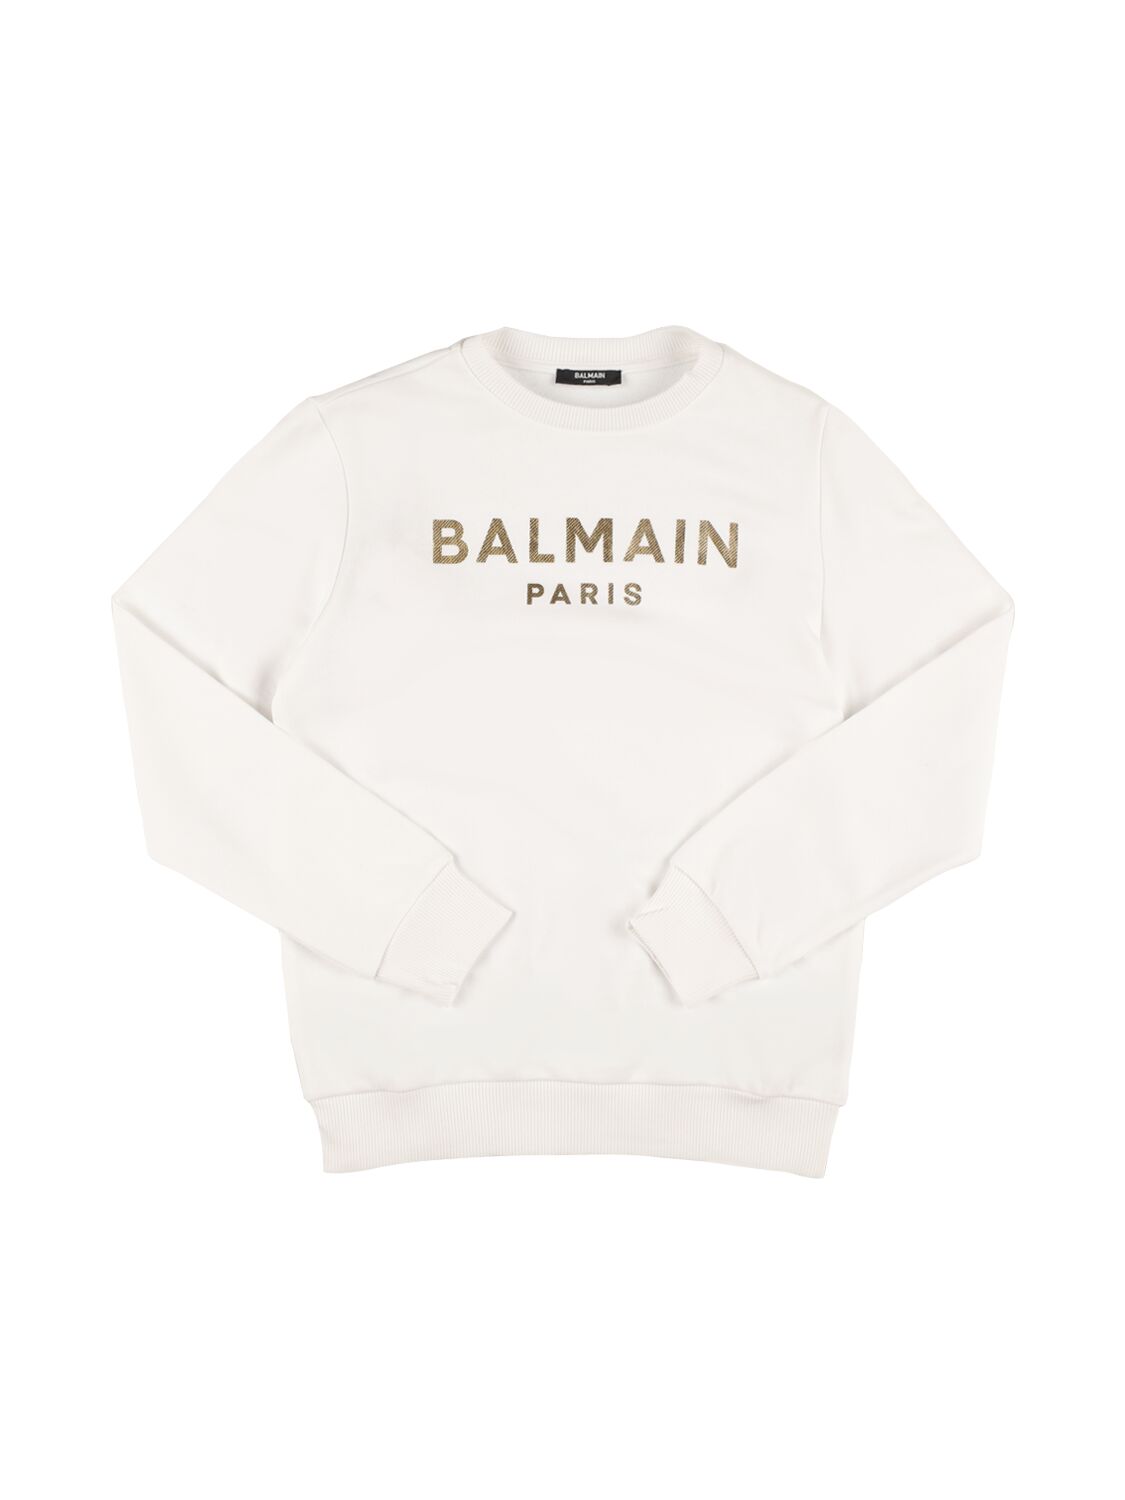 Balmain Kids' Printed Logo Crewneck Sweatshirt In White,gold